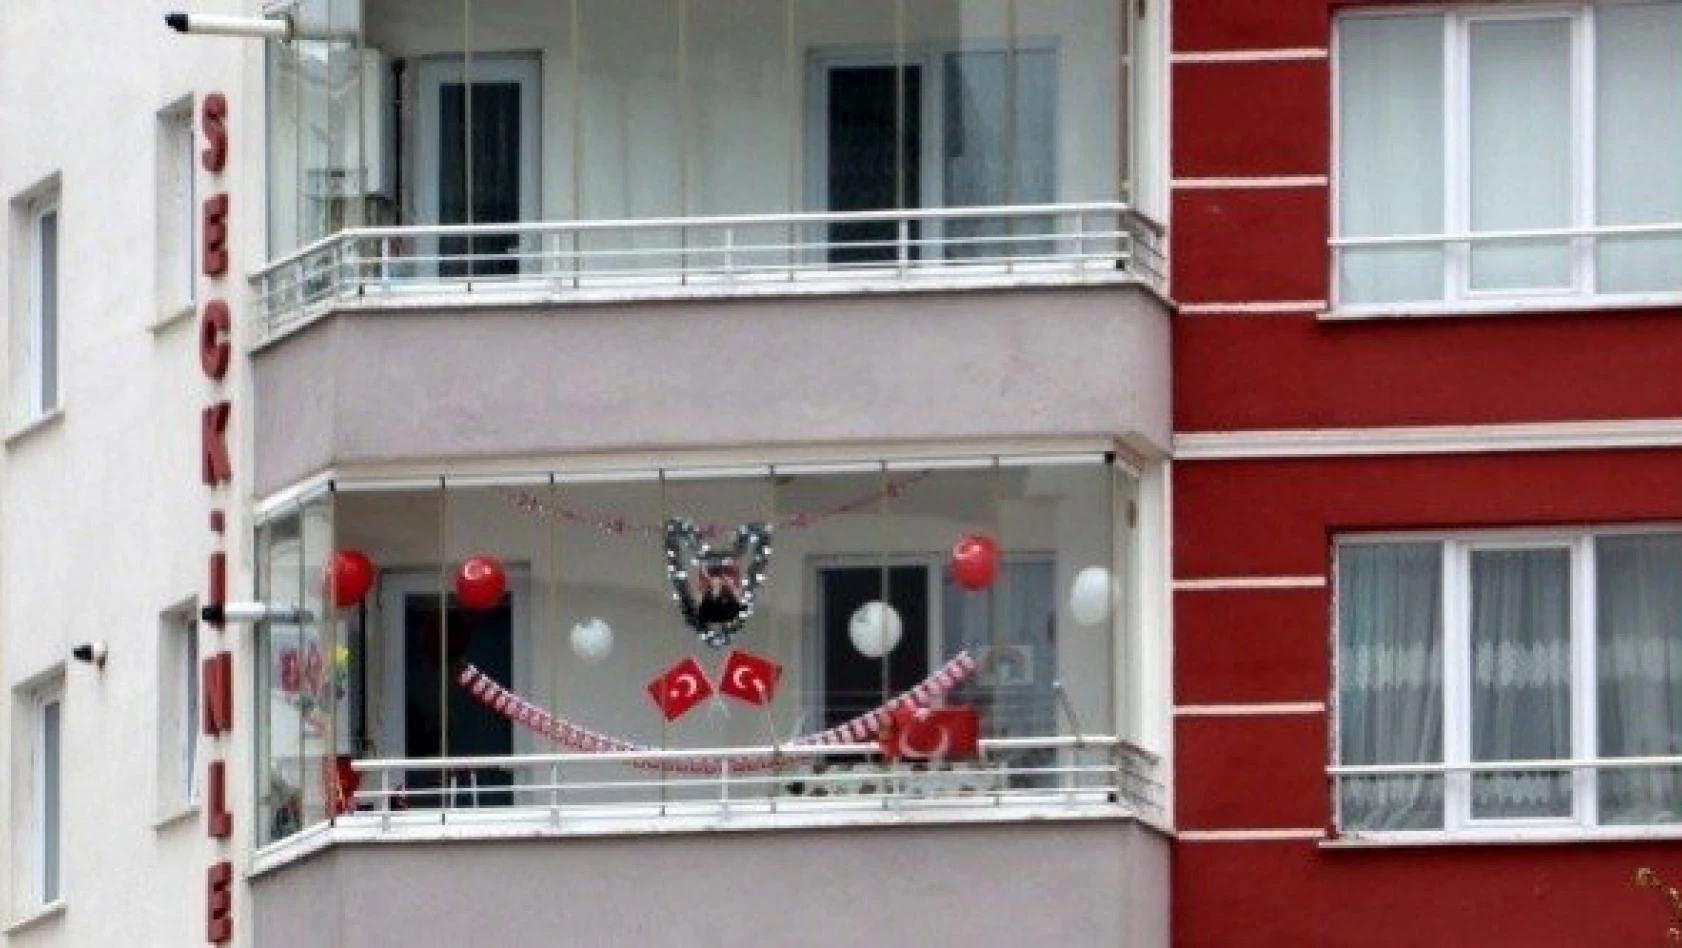 Kastamonu'da balkon ve pencereler 23 Nisan coşkusu için süslendi